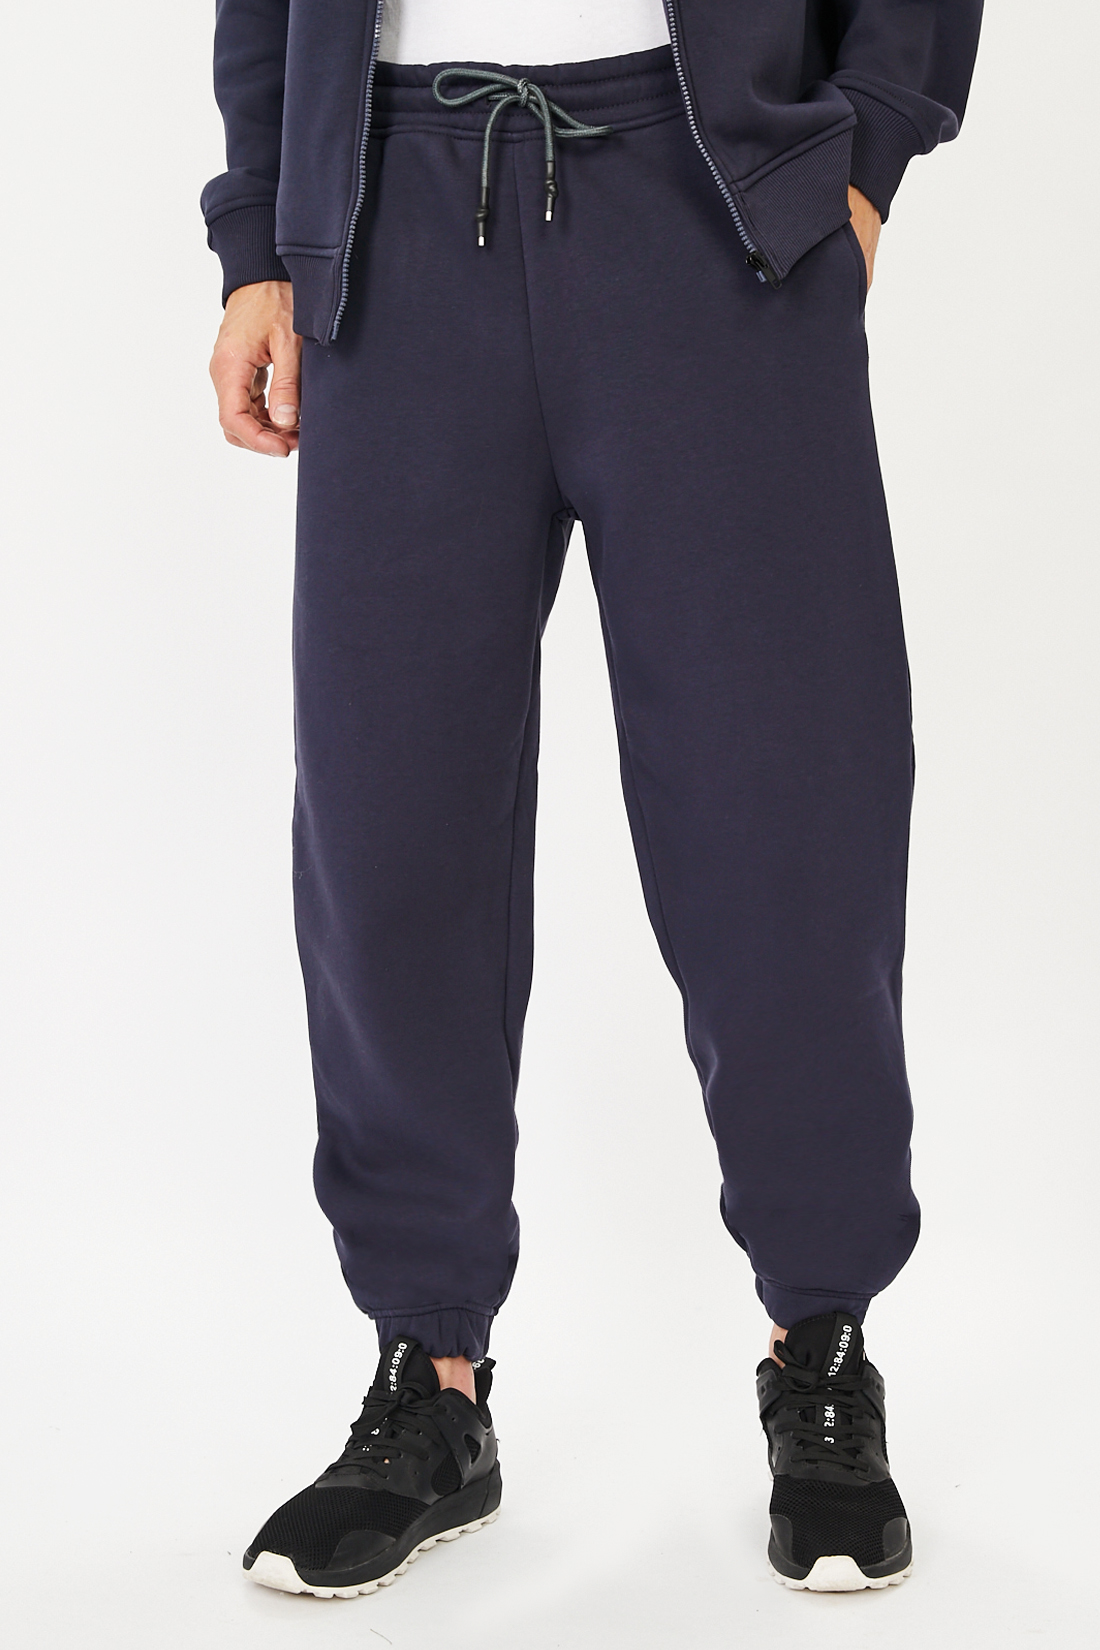 Спортивные брюки мужские Baon B791501 синие L